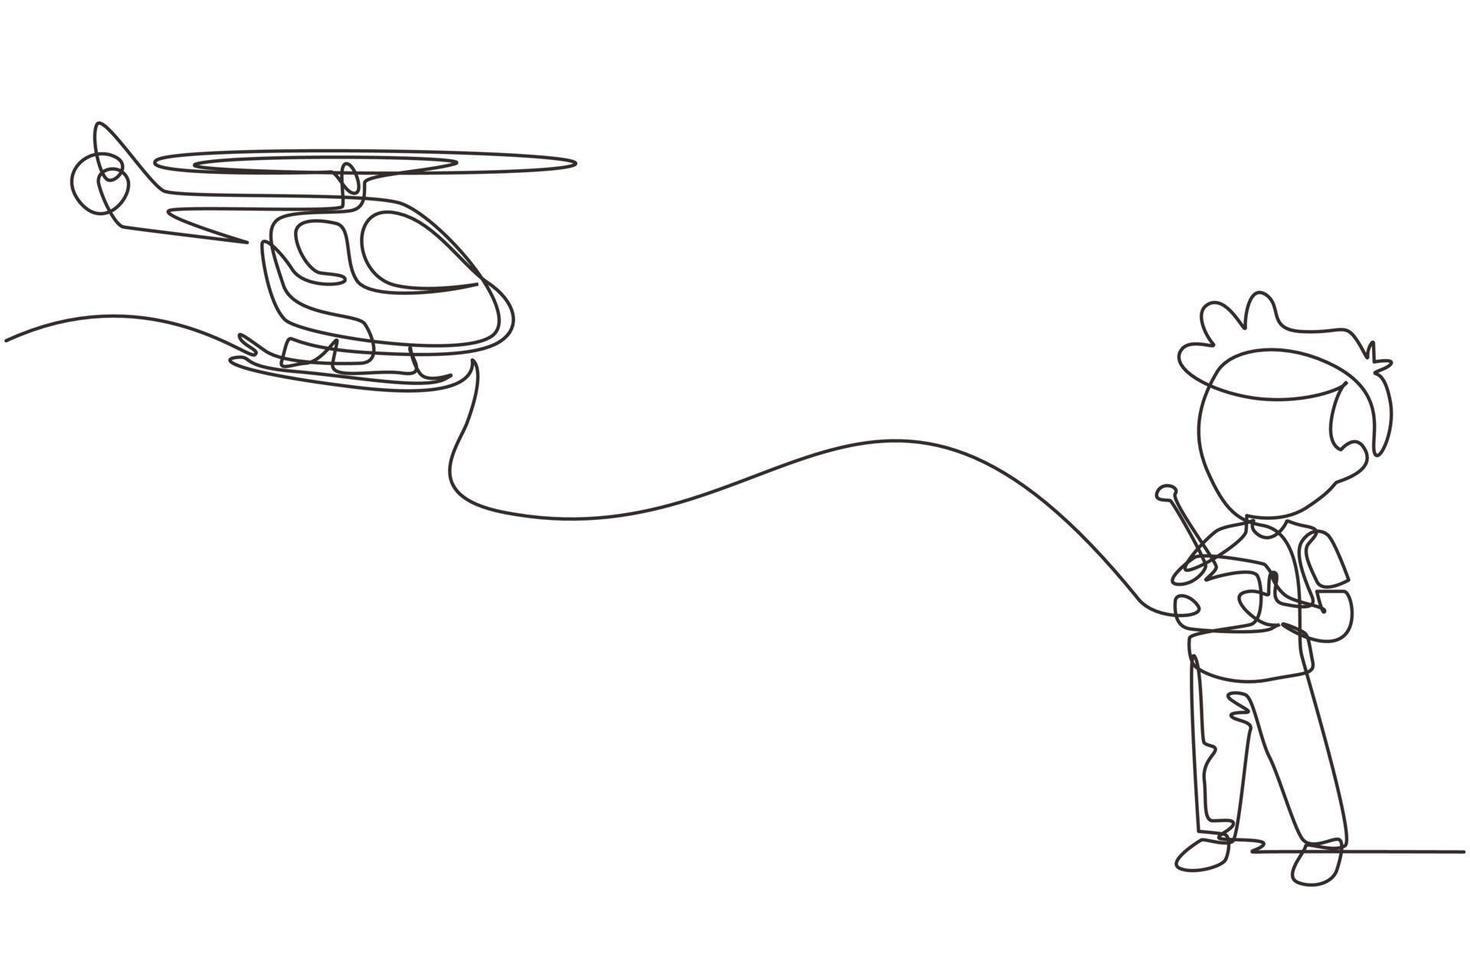 niños de dibujo de una línea continua jugando con un helicóptero de juguete controlado por radio. niños jugando sosteniendo controladores rc. niños emocionados sonrientes con juguetes rc modernos. gráfico vectorial de diseño de dibujo de una sola línea vector